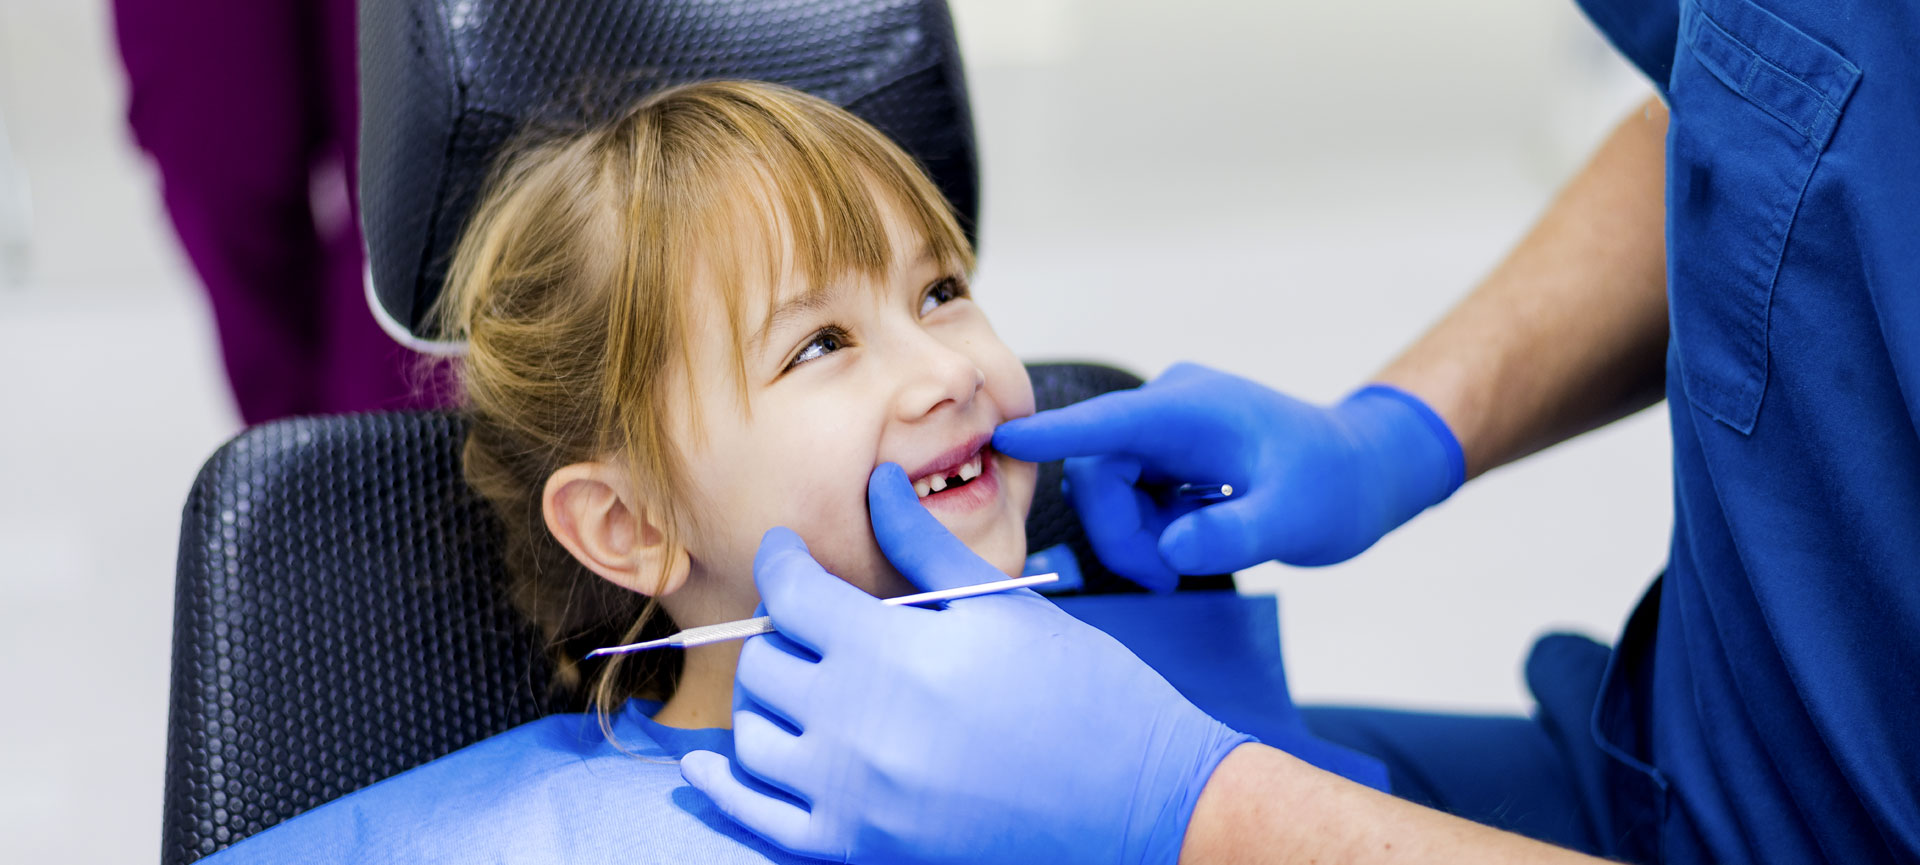 Childrens dentistry